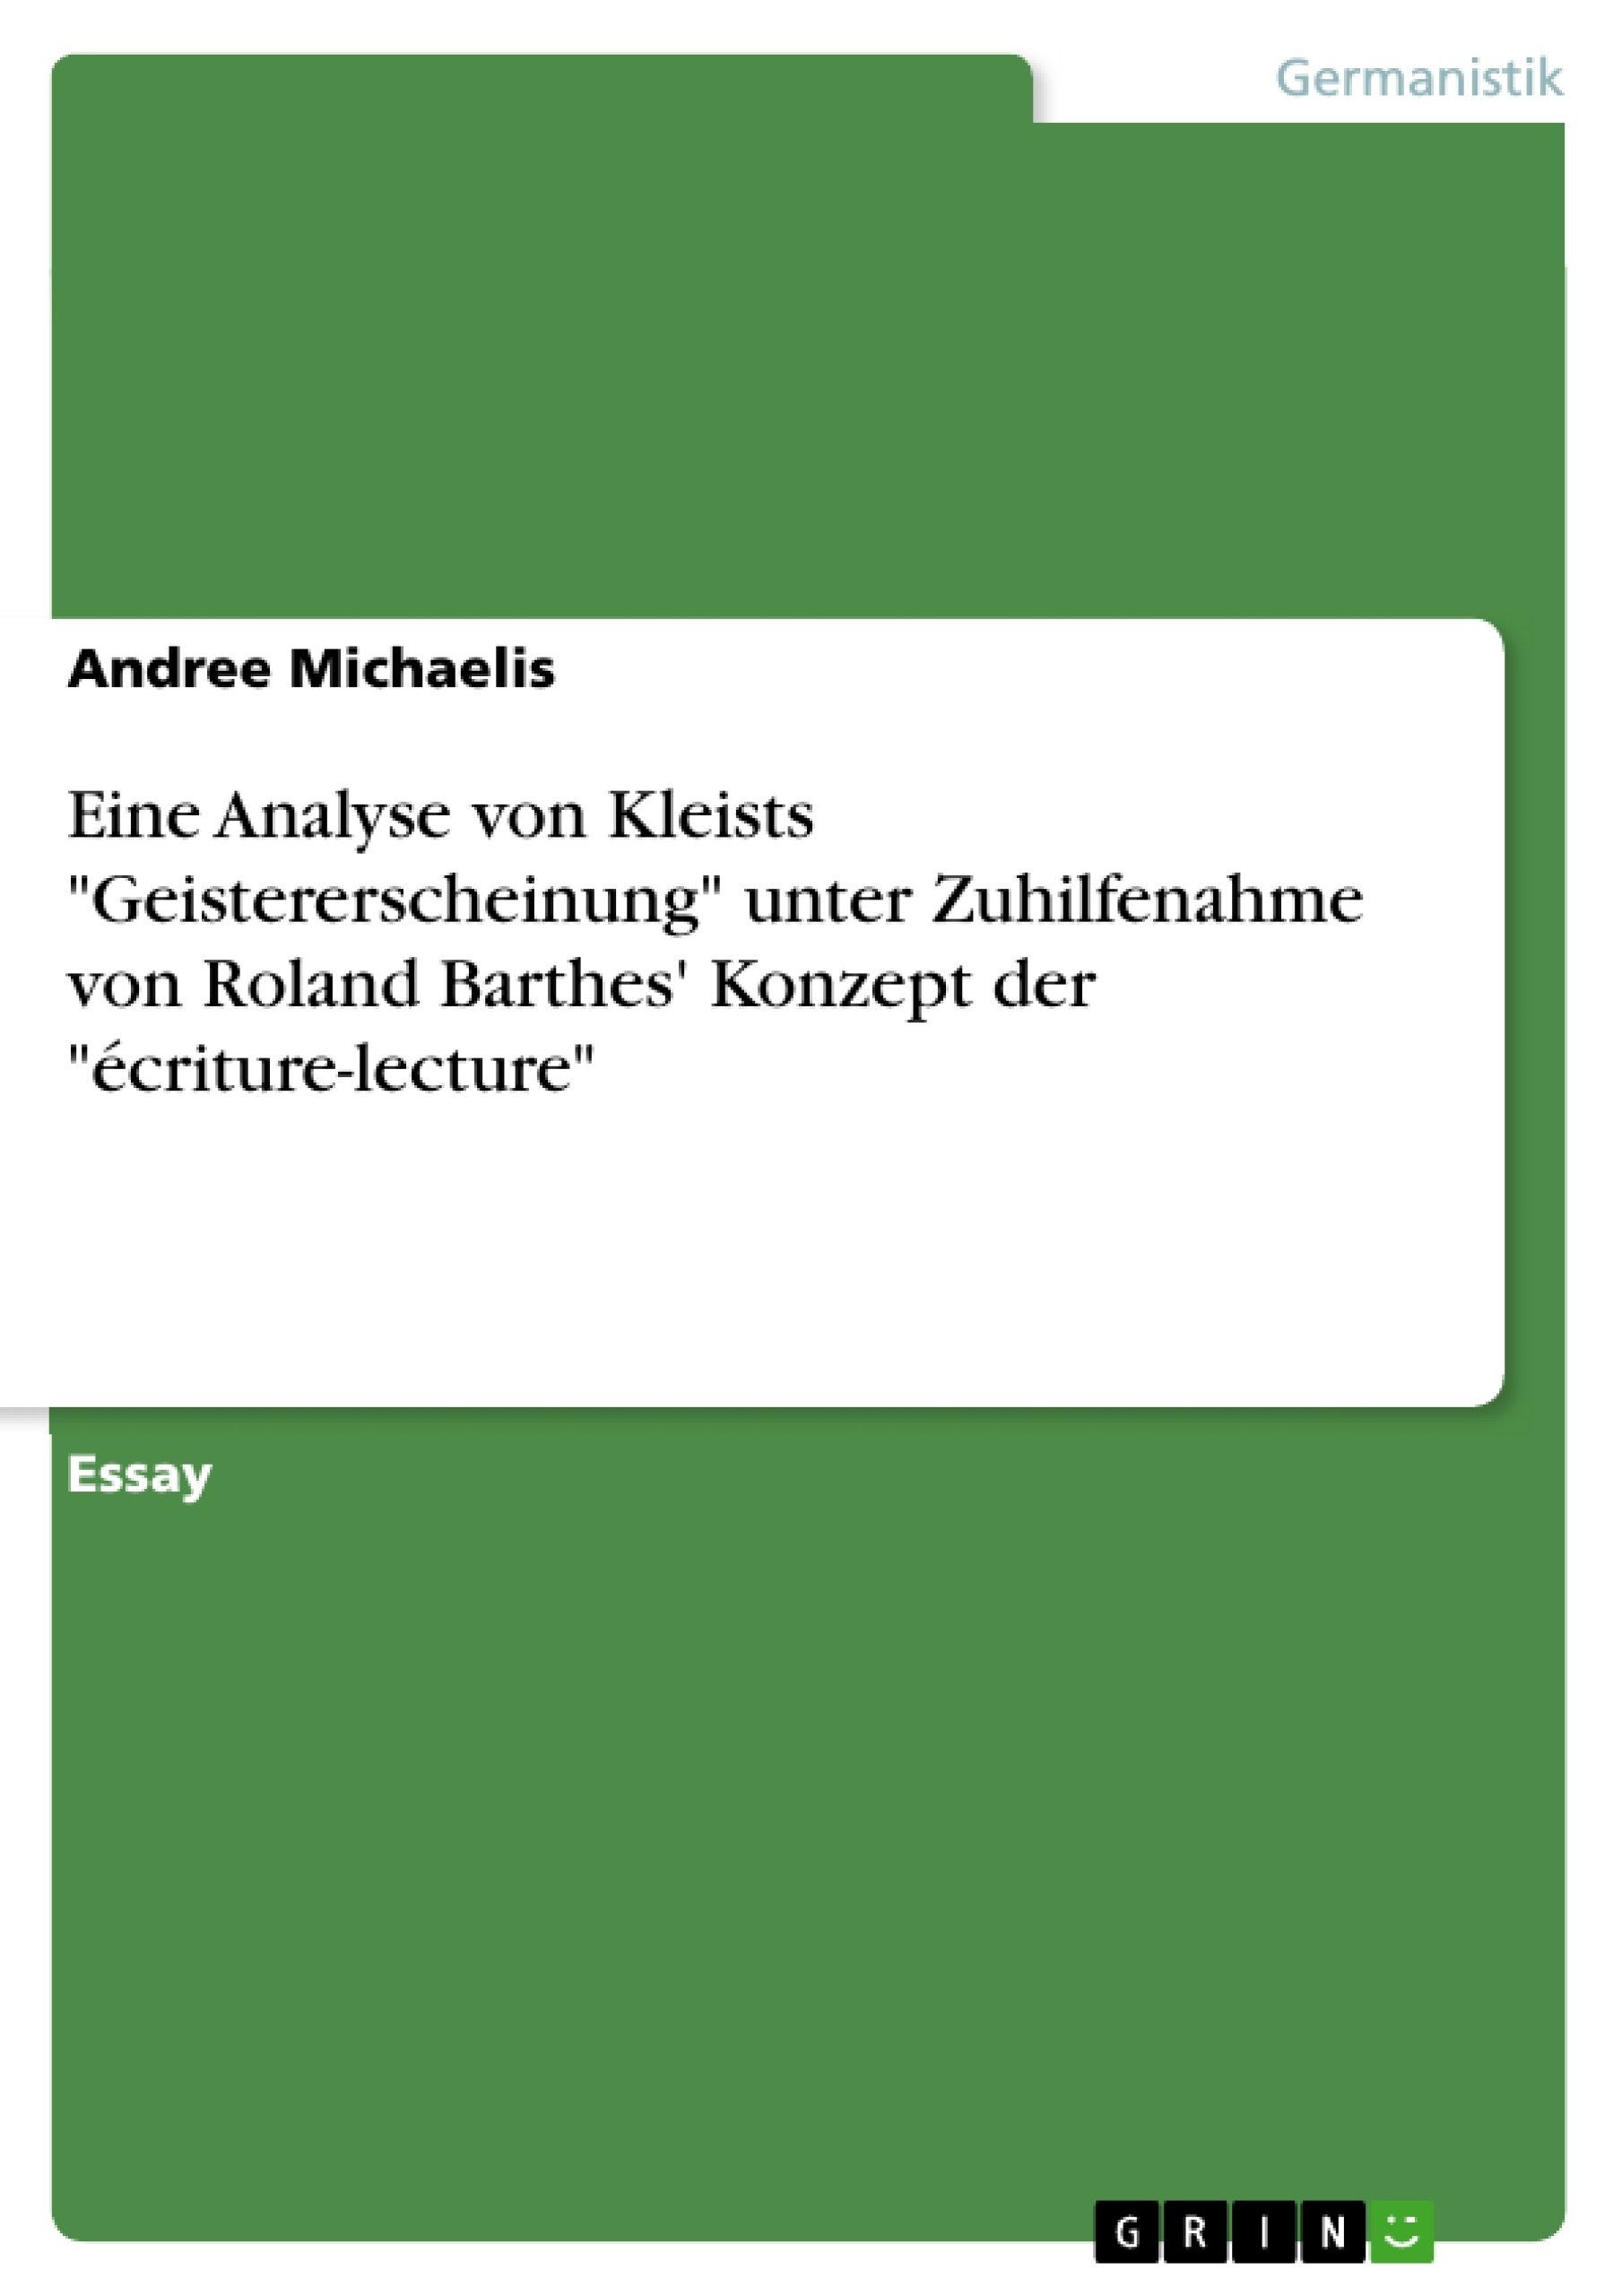 Titre: Eine Analyse von Kleists "Geistererscheinung" unter Zuhilfenahme von Roland Barthes' Konzept  der "écriture-lecture"